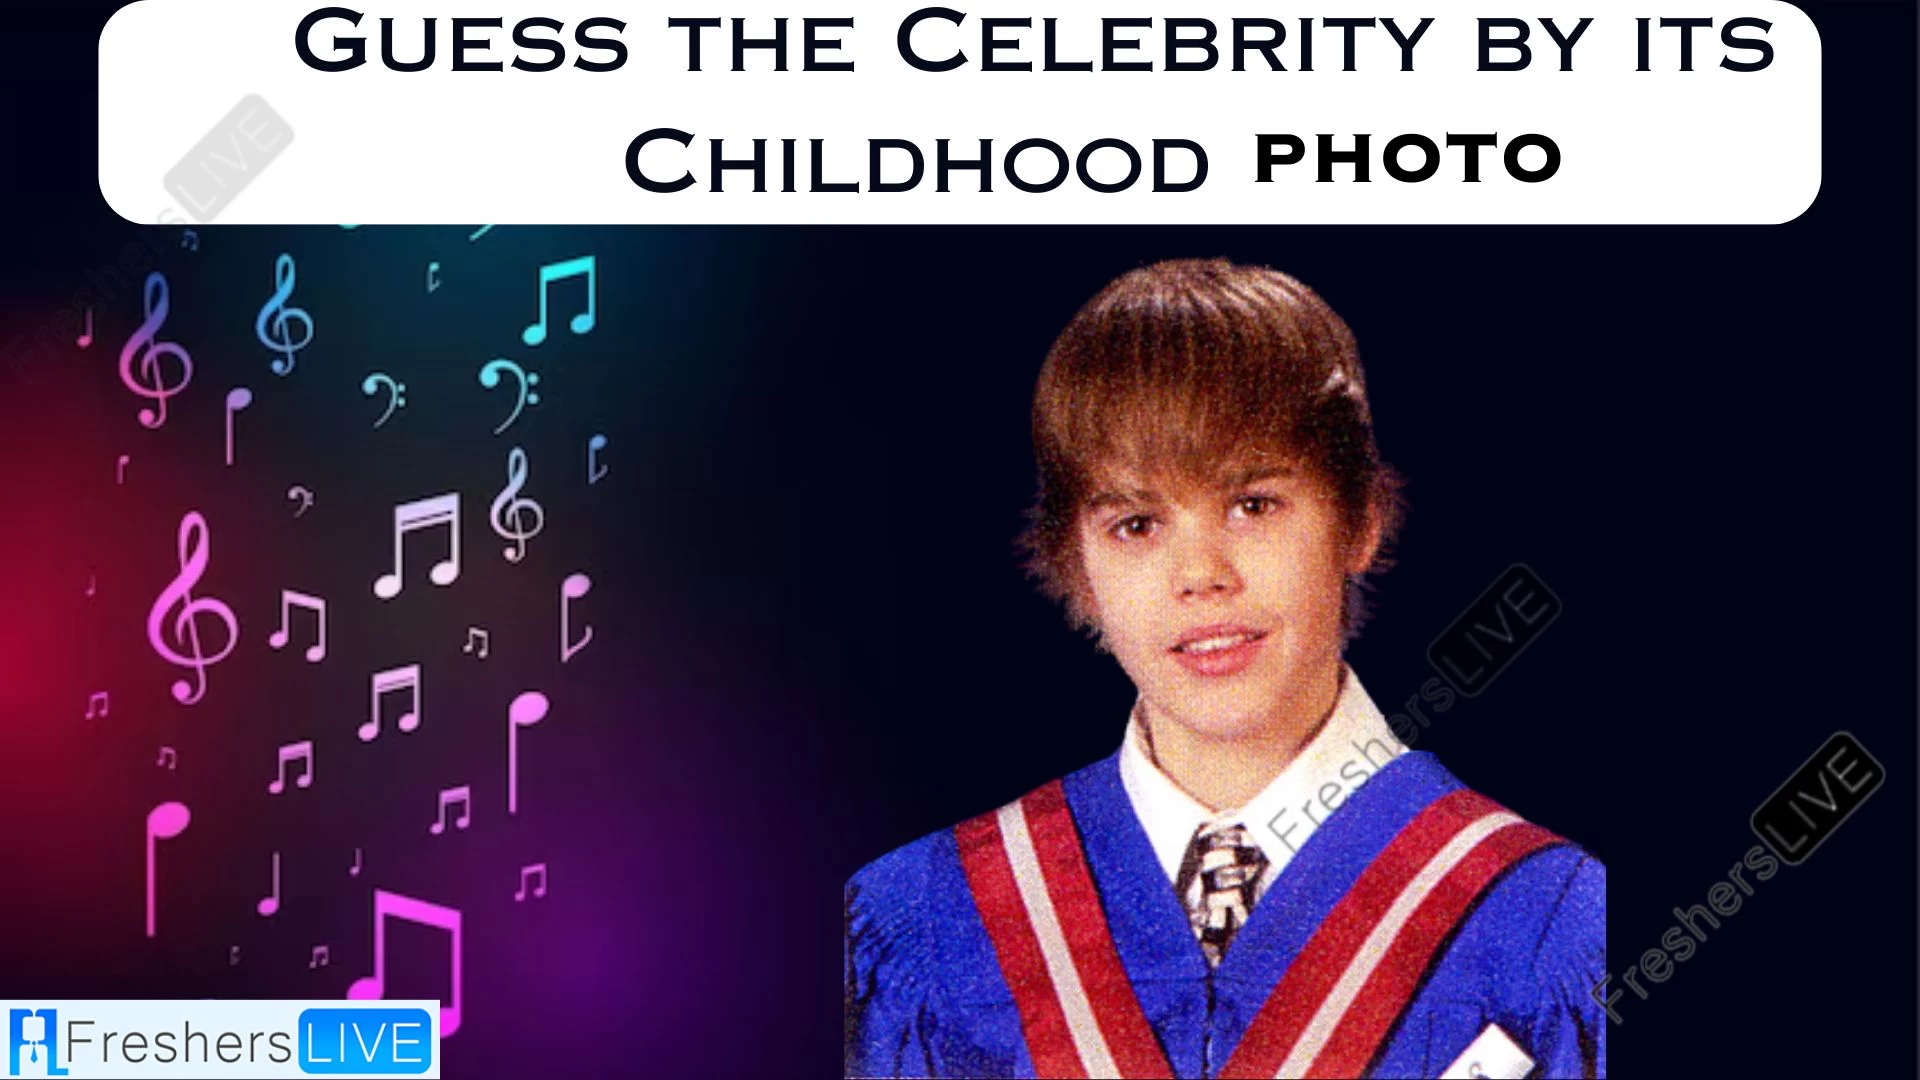 ¿Puedes adivinar personajes famosos a partir de sus fotos de infancia?  ¡Prueba tus conocimientos!